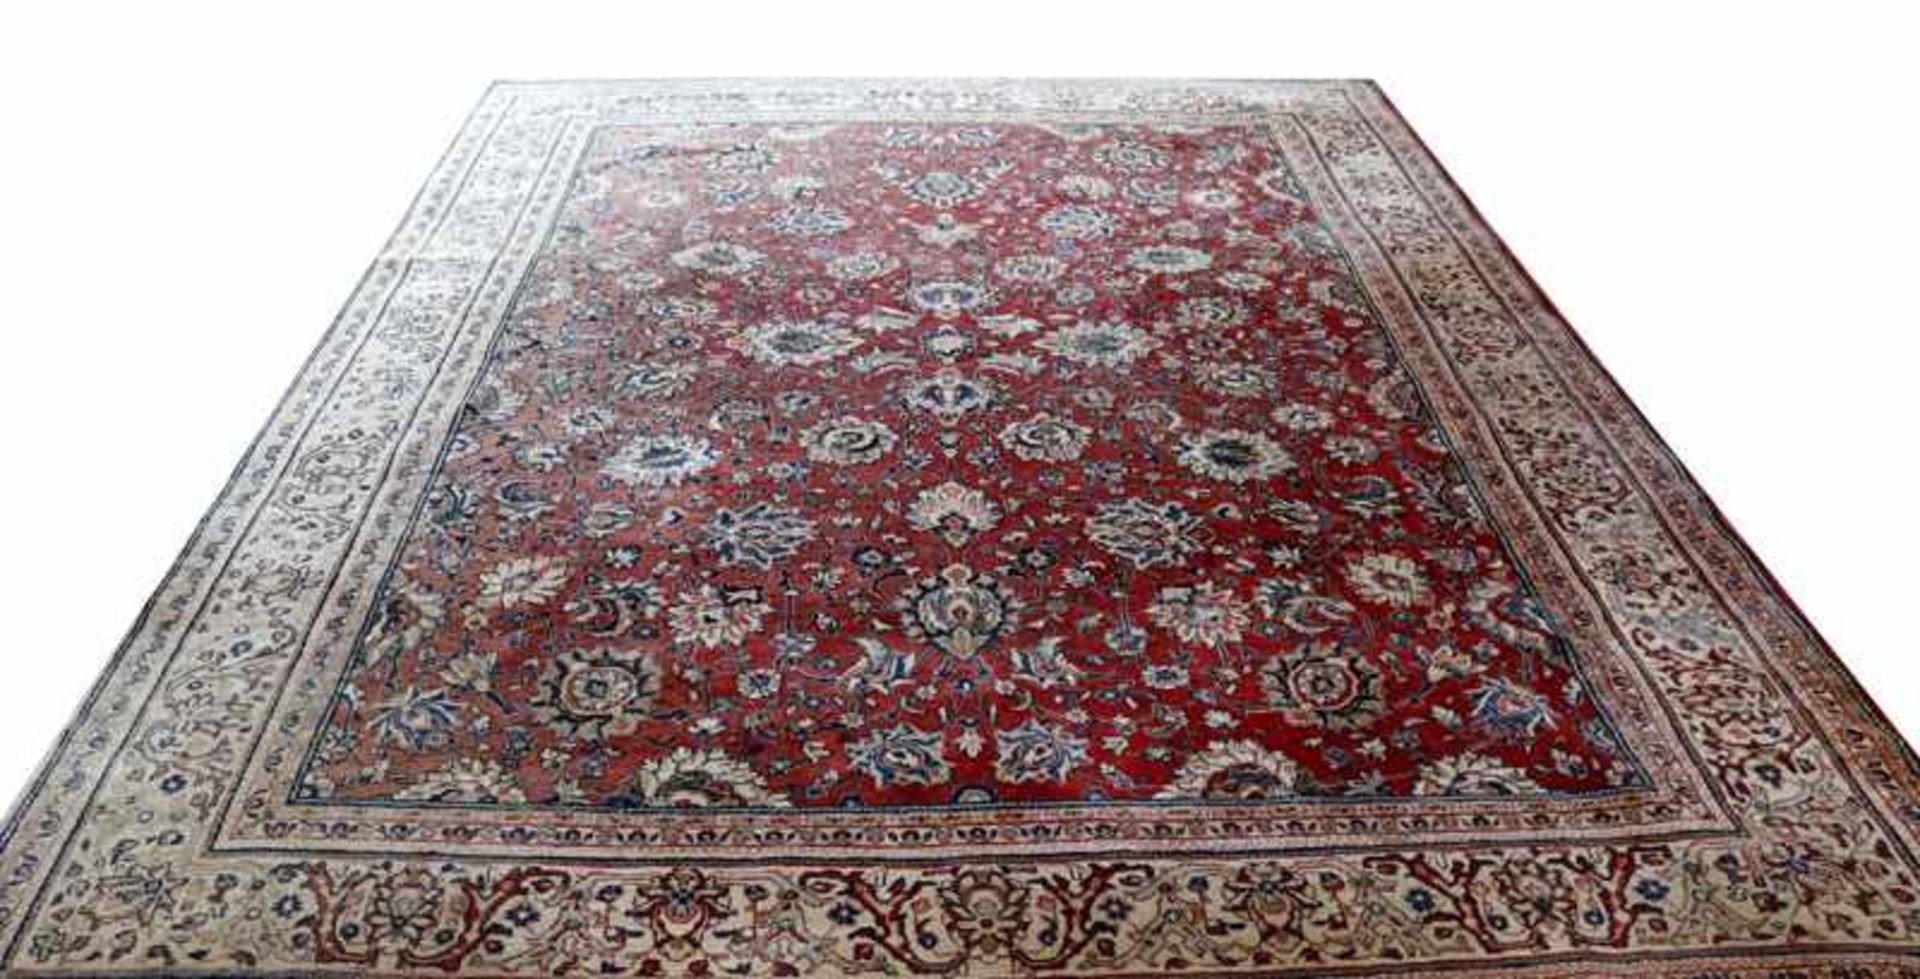 Teppich, Sarough, rot/blau/beige, teils verblast, teils fleckig, Gebrauchsspuren, 350 cm x 260 cm